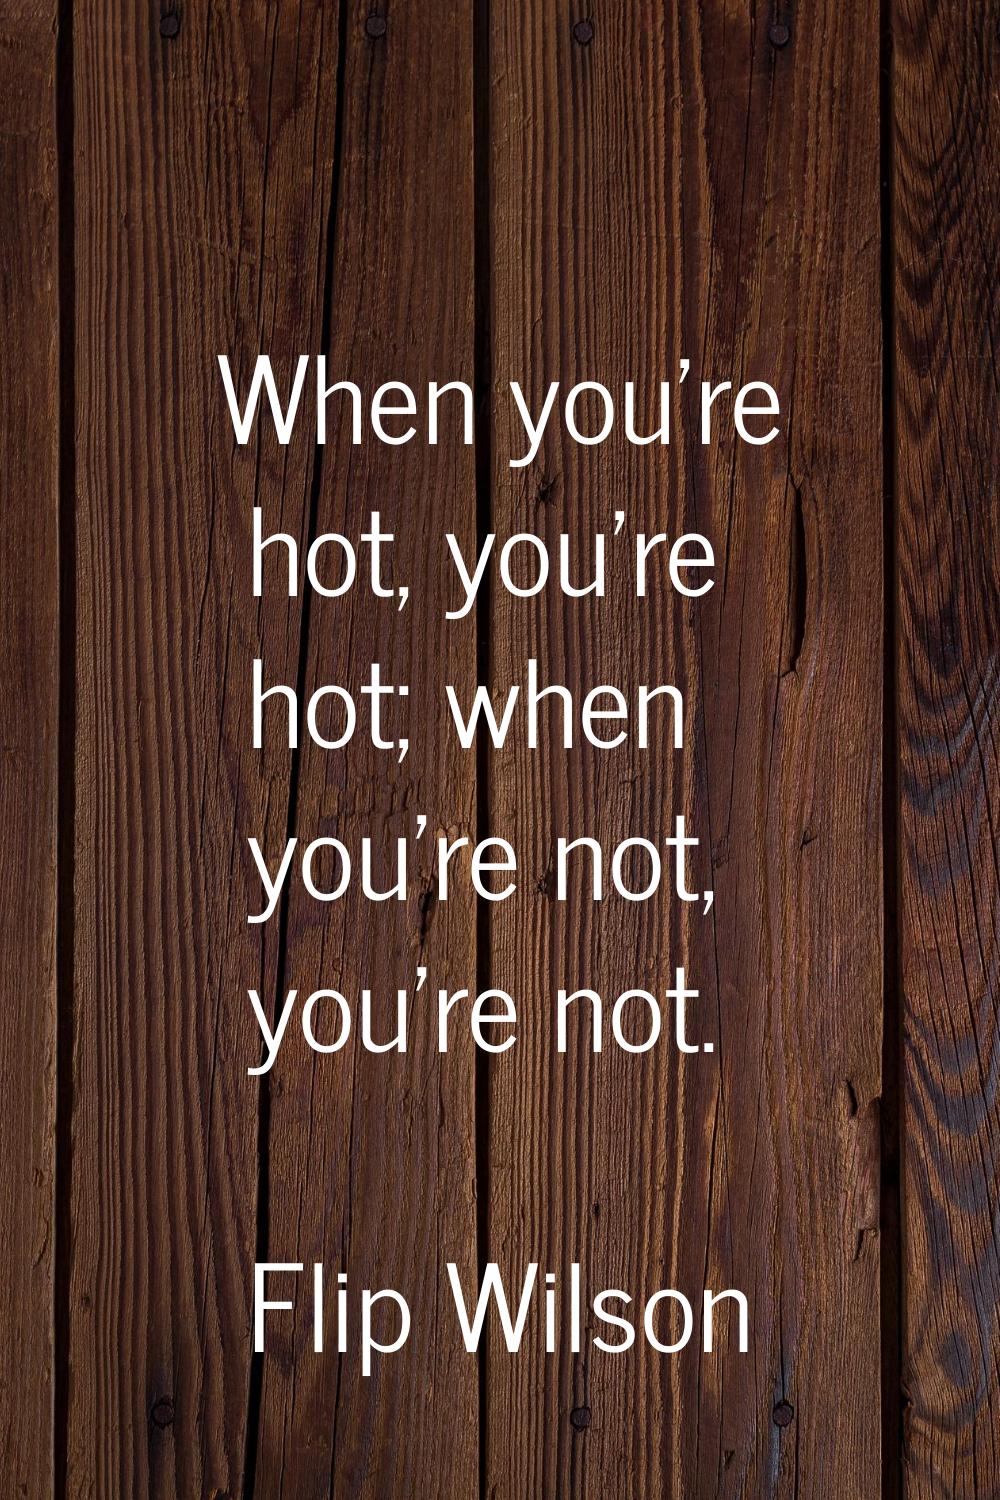 When you're hot, you're hot; when you're not, you're not.